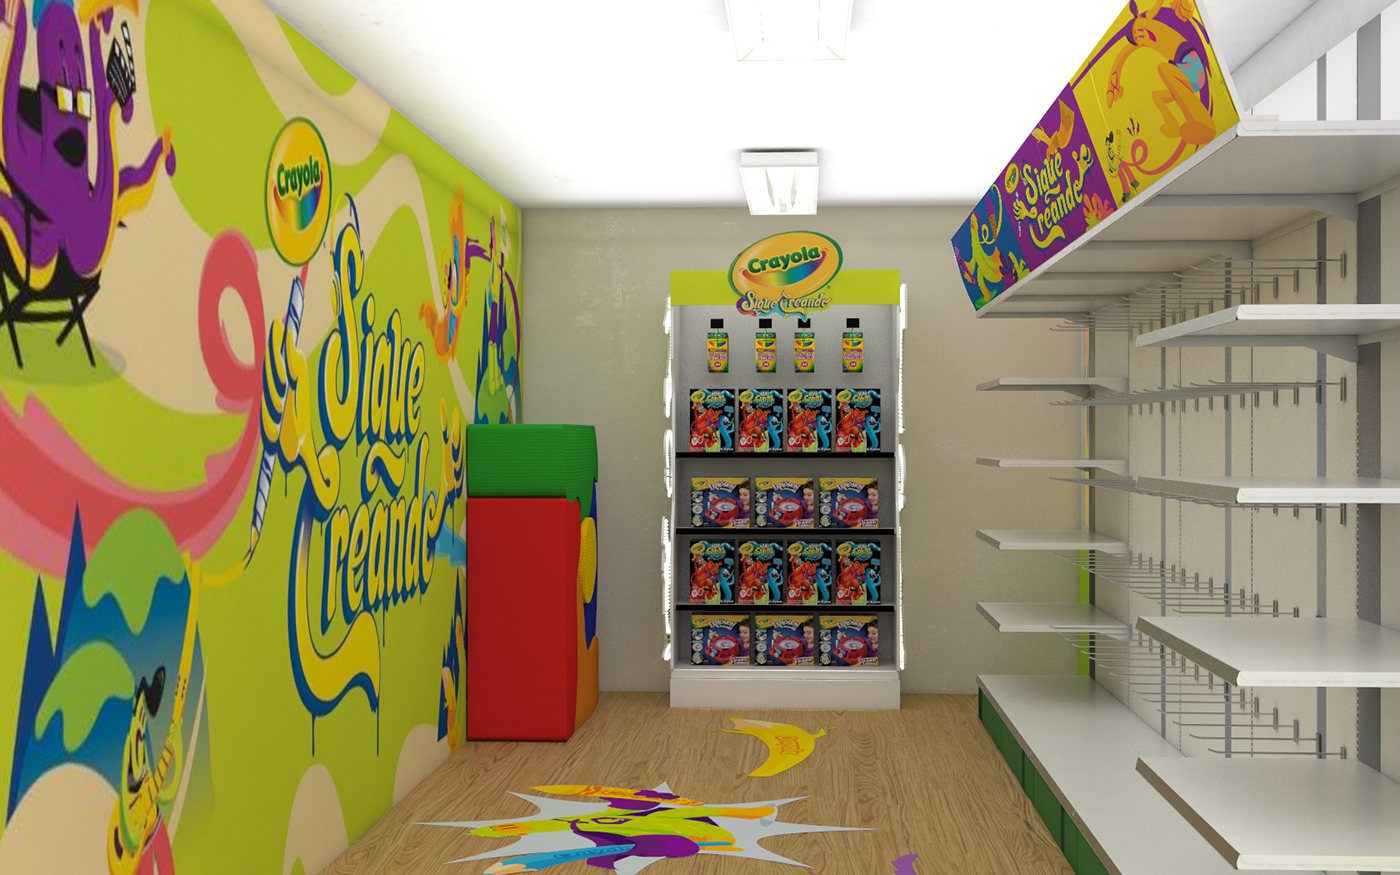 showroom Crayola Exhibition  product sigue creando gondola Cabecera